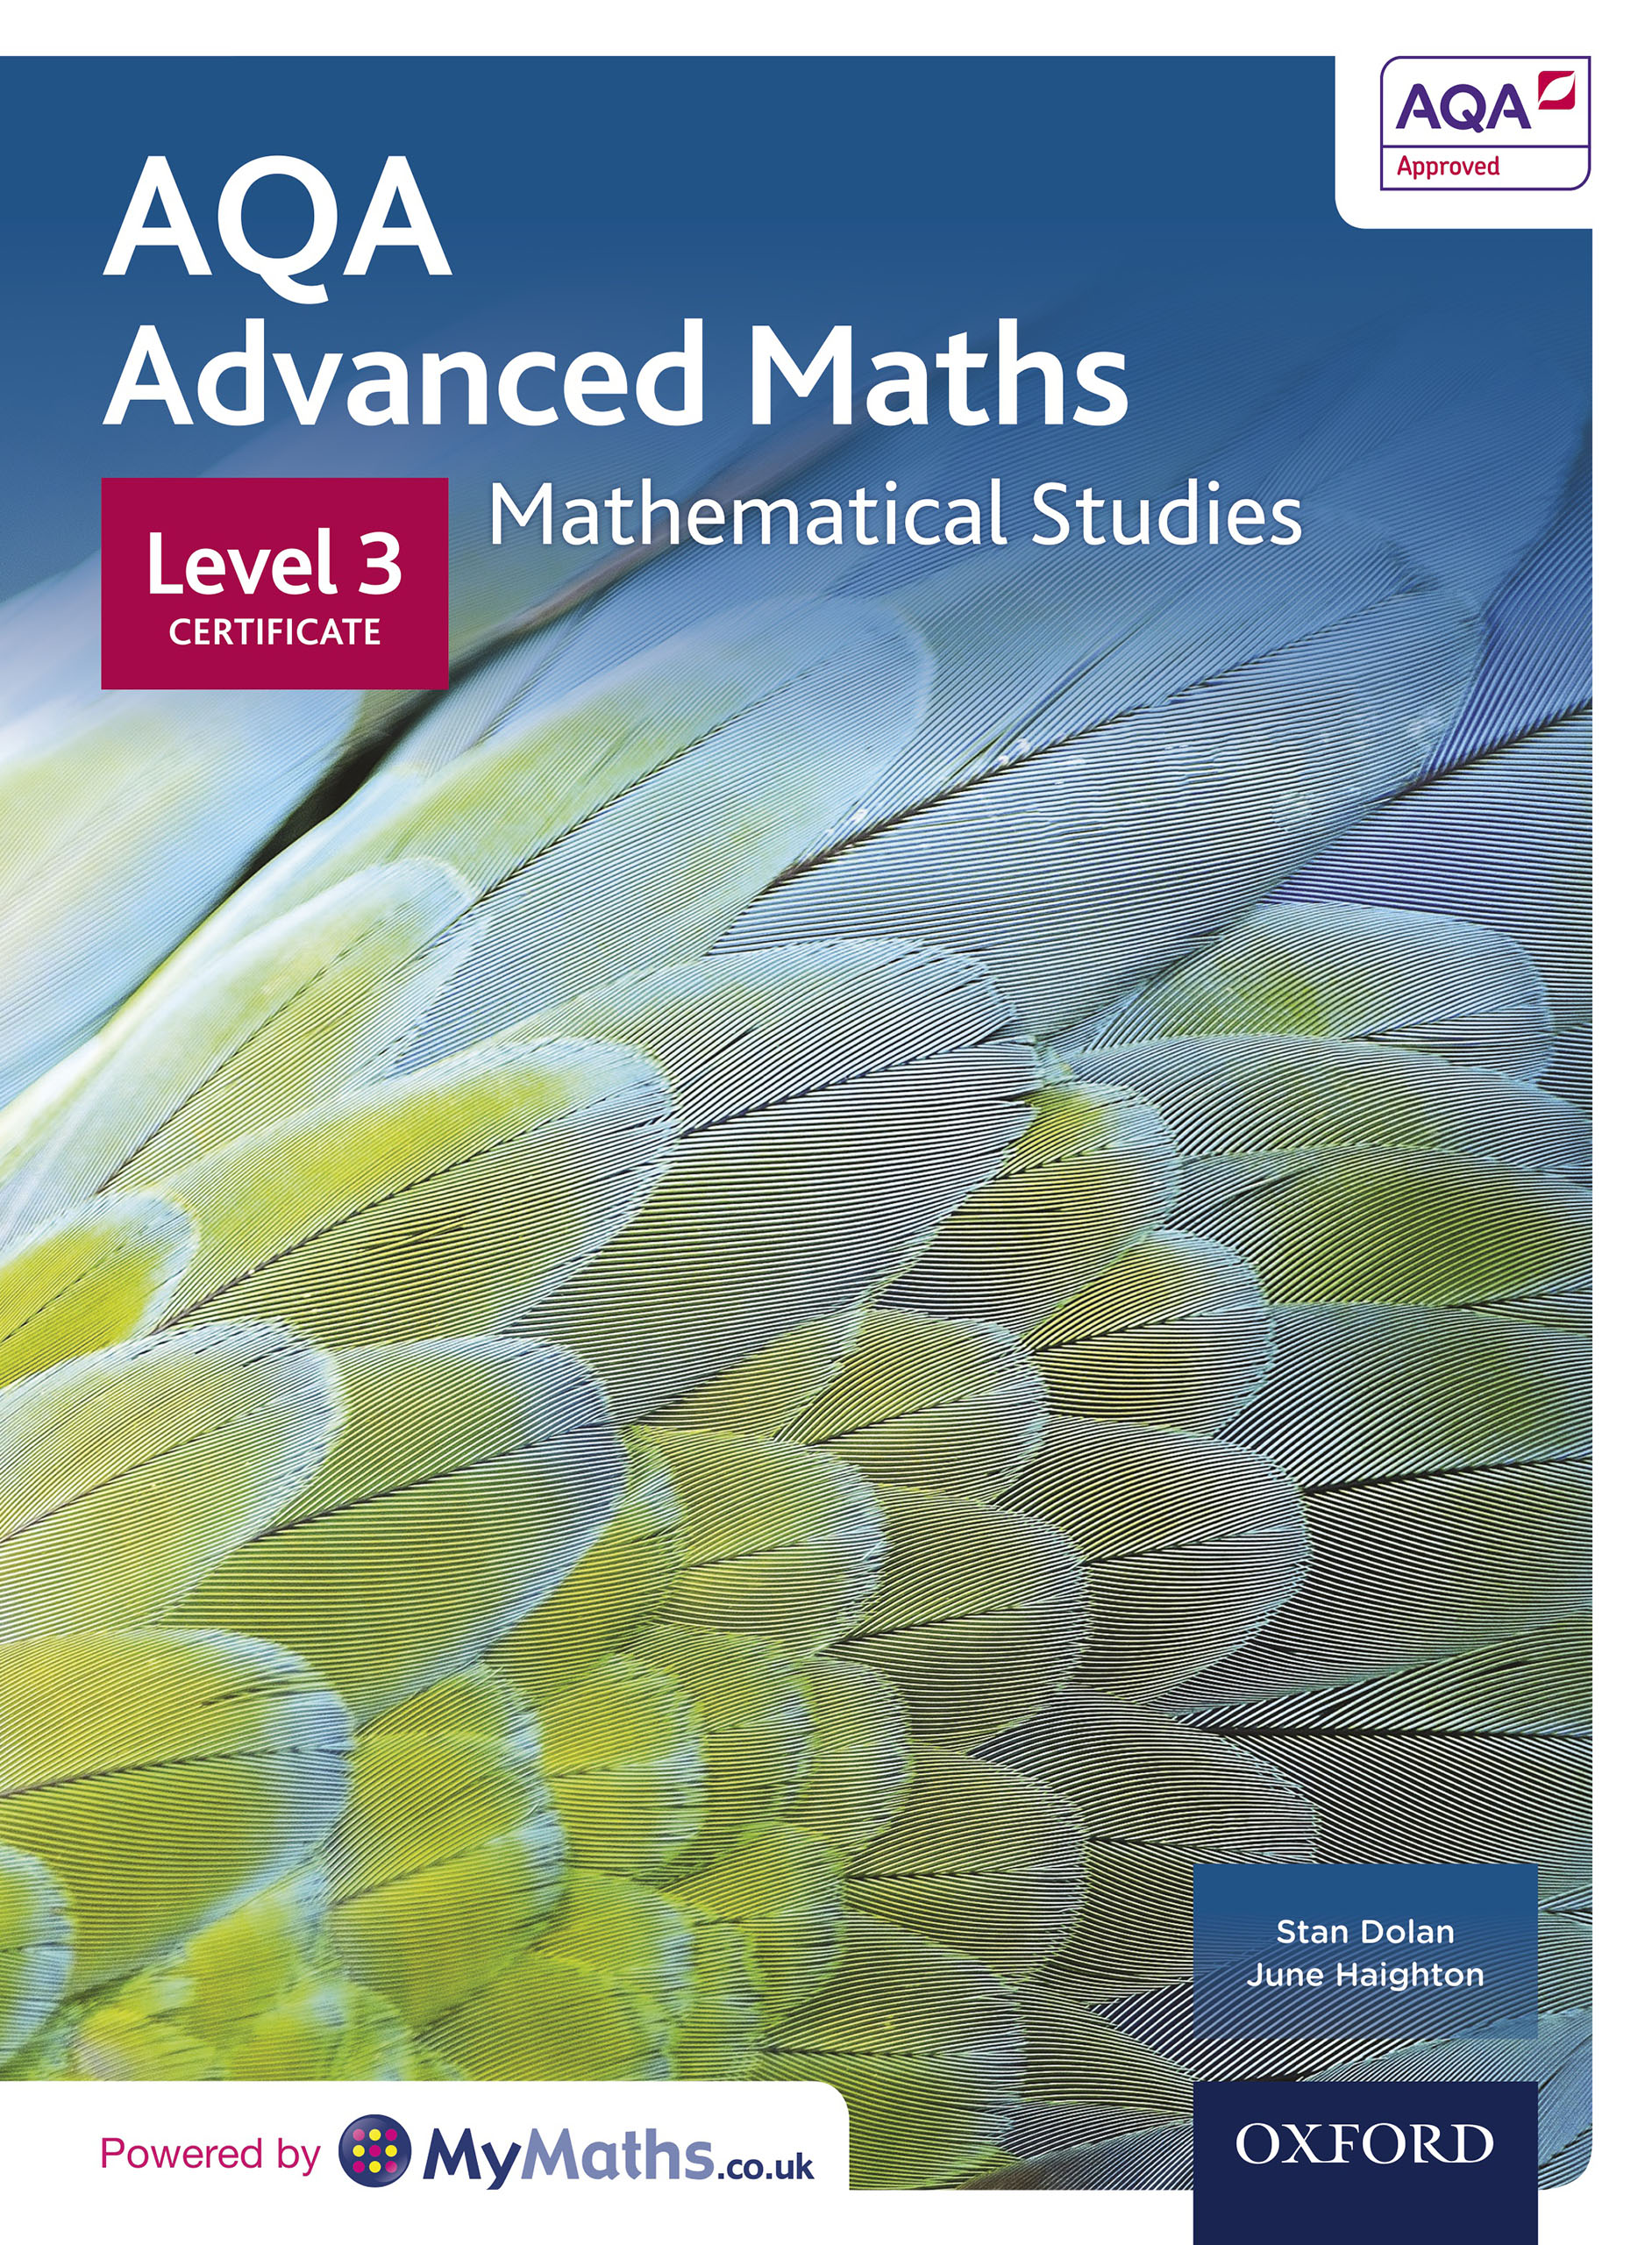 AQA Advanced Maths - Level 3 Certificate